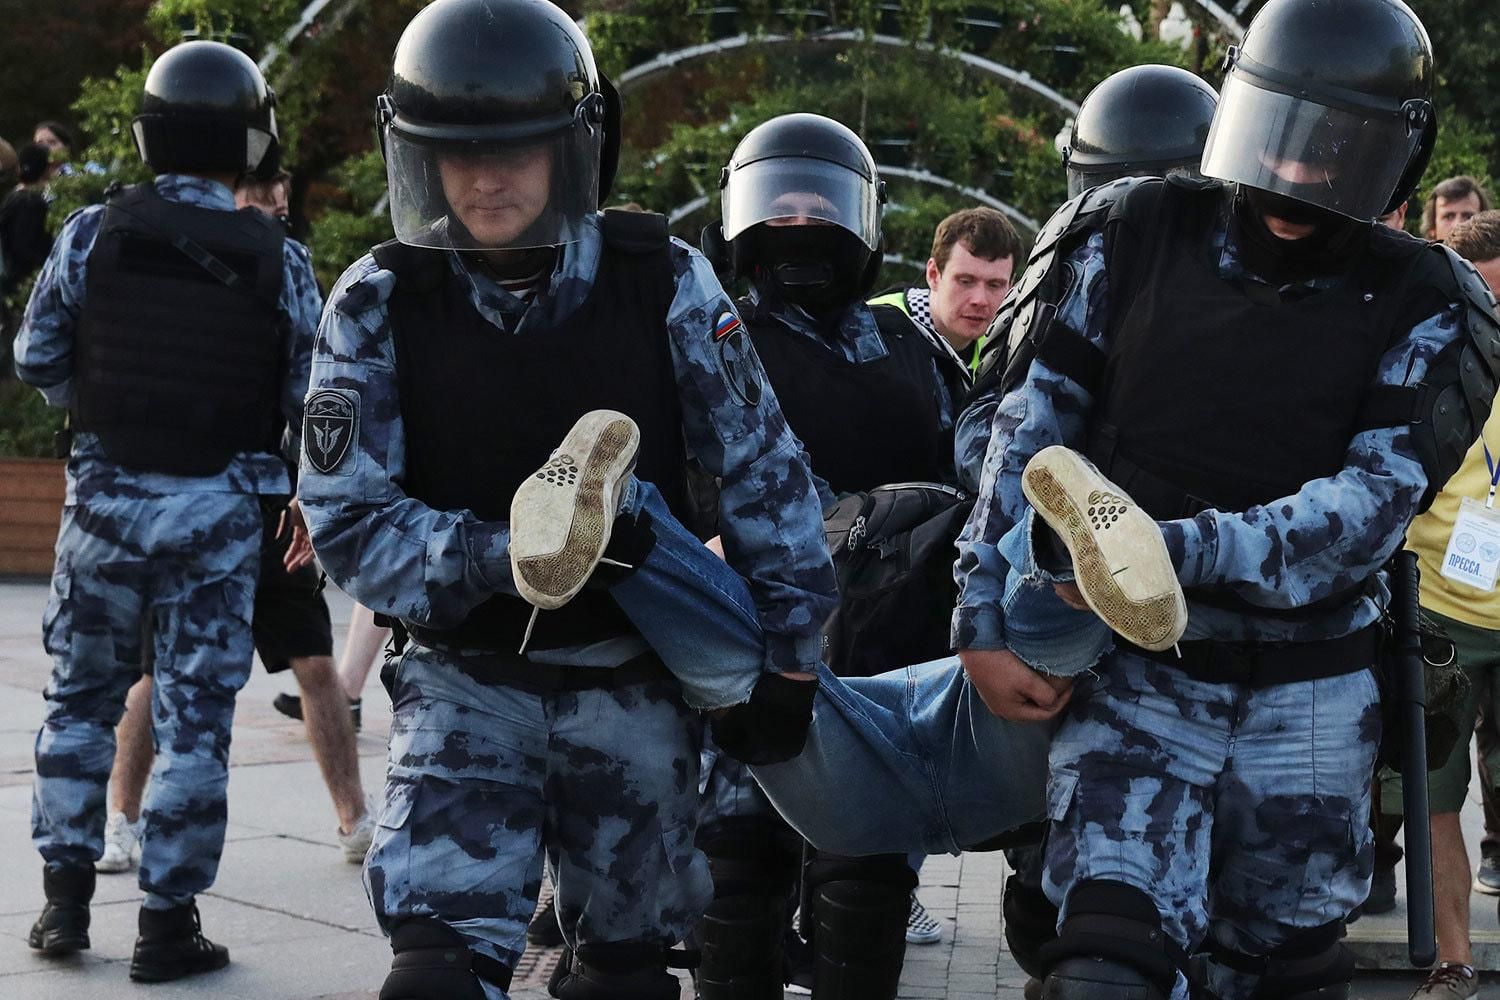 Аресты в России: активист получил три года, потому что коснулся шлема росгвардейца – видео